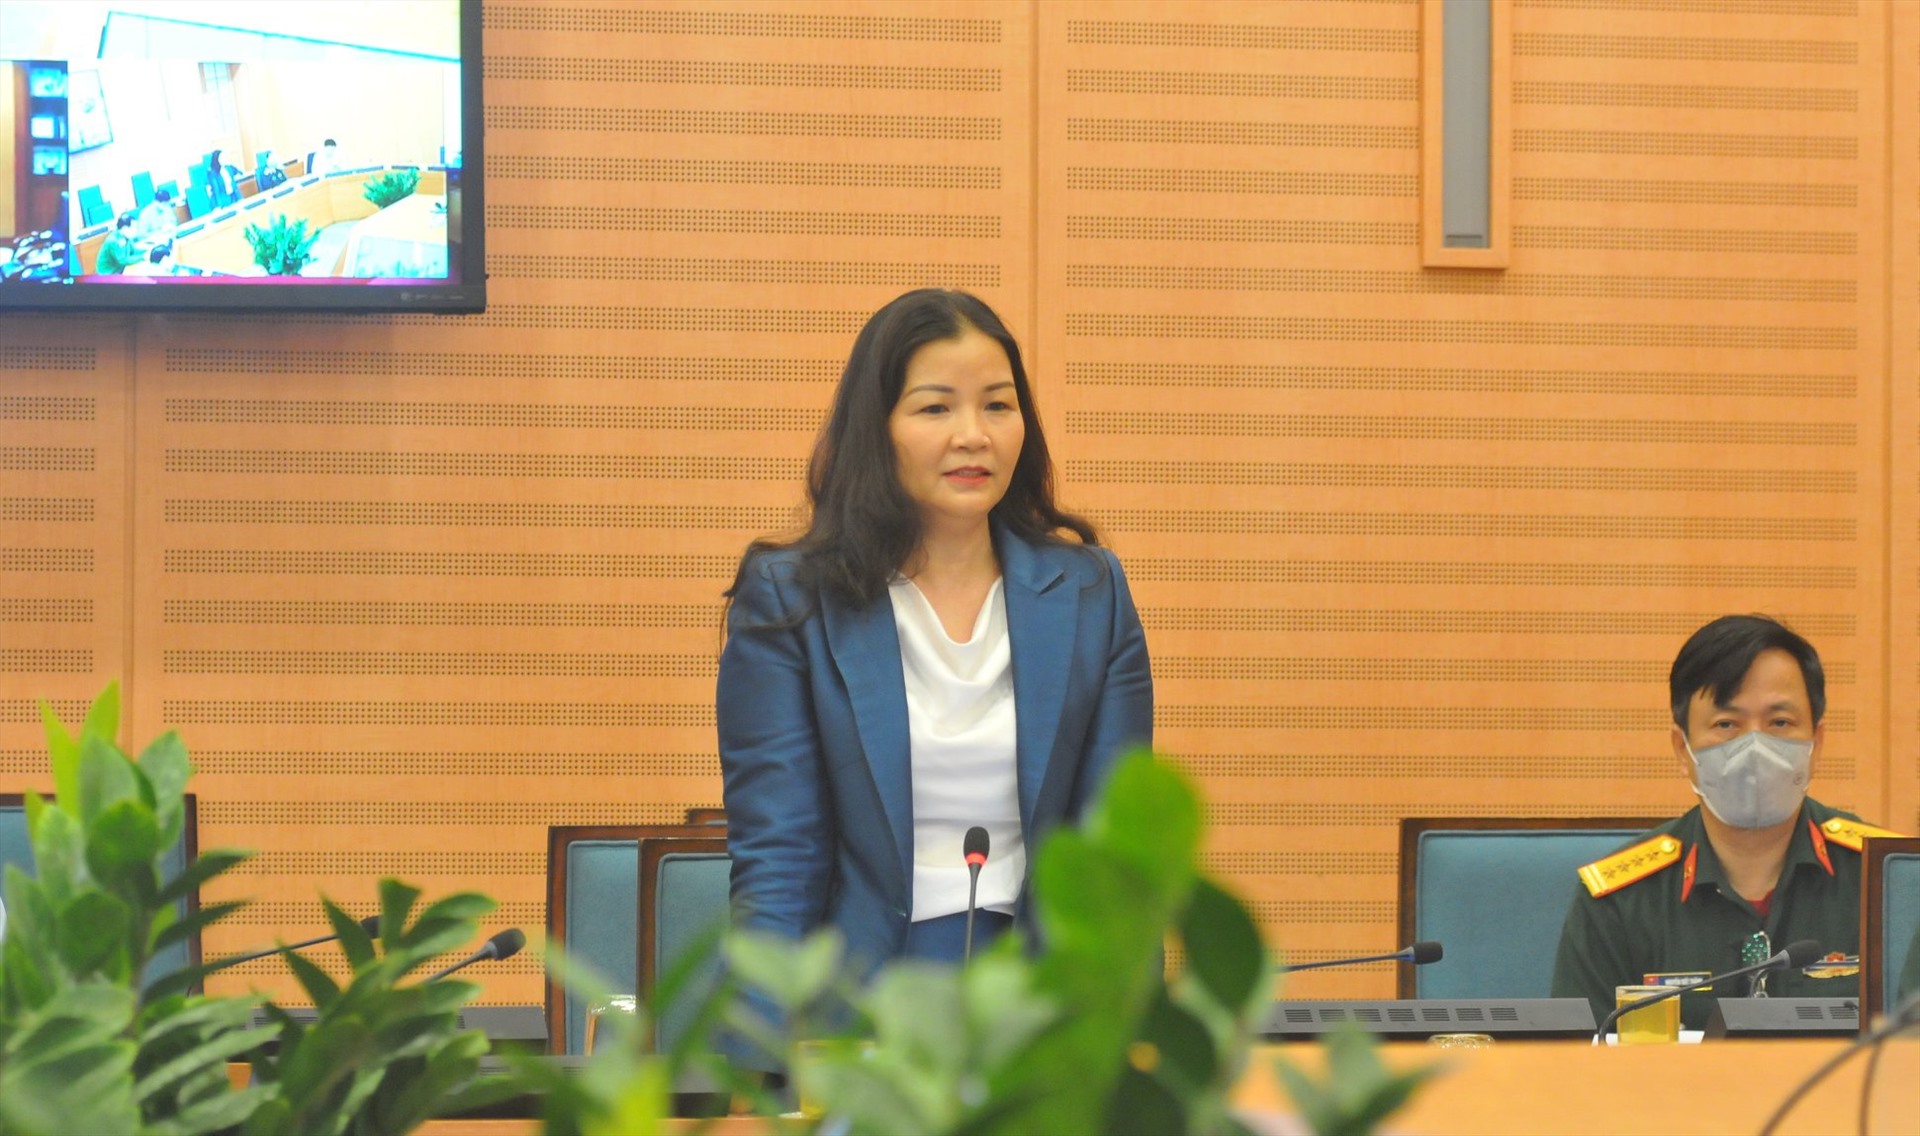 Bà Trần Thị Phương Lan - Phó Giám đốc Sở Công thương Hà Nội báo cáo tại cuộc họp Ban chỉ đạo phòng chống dịch COVID-19 thành phố Hà Nội chiều 3.4.